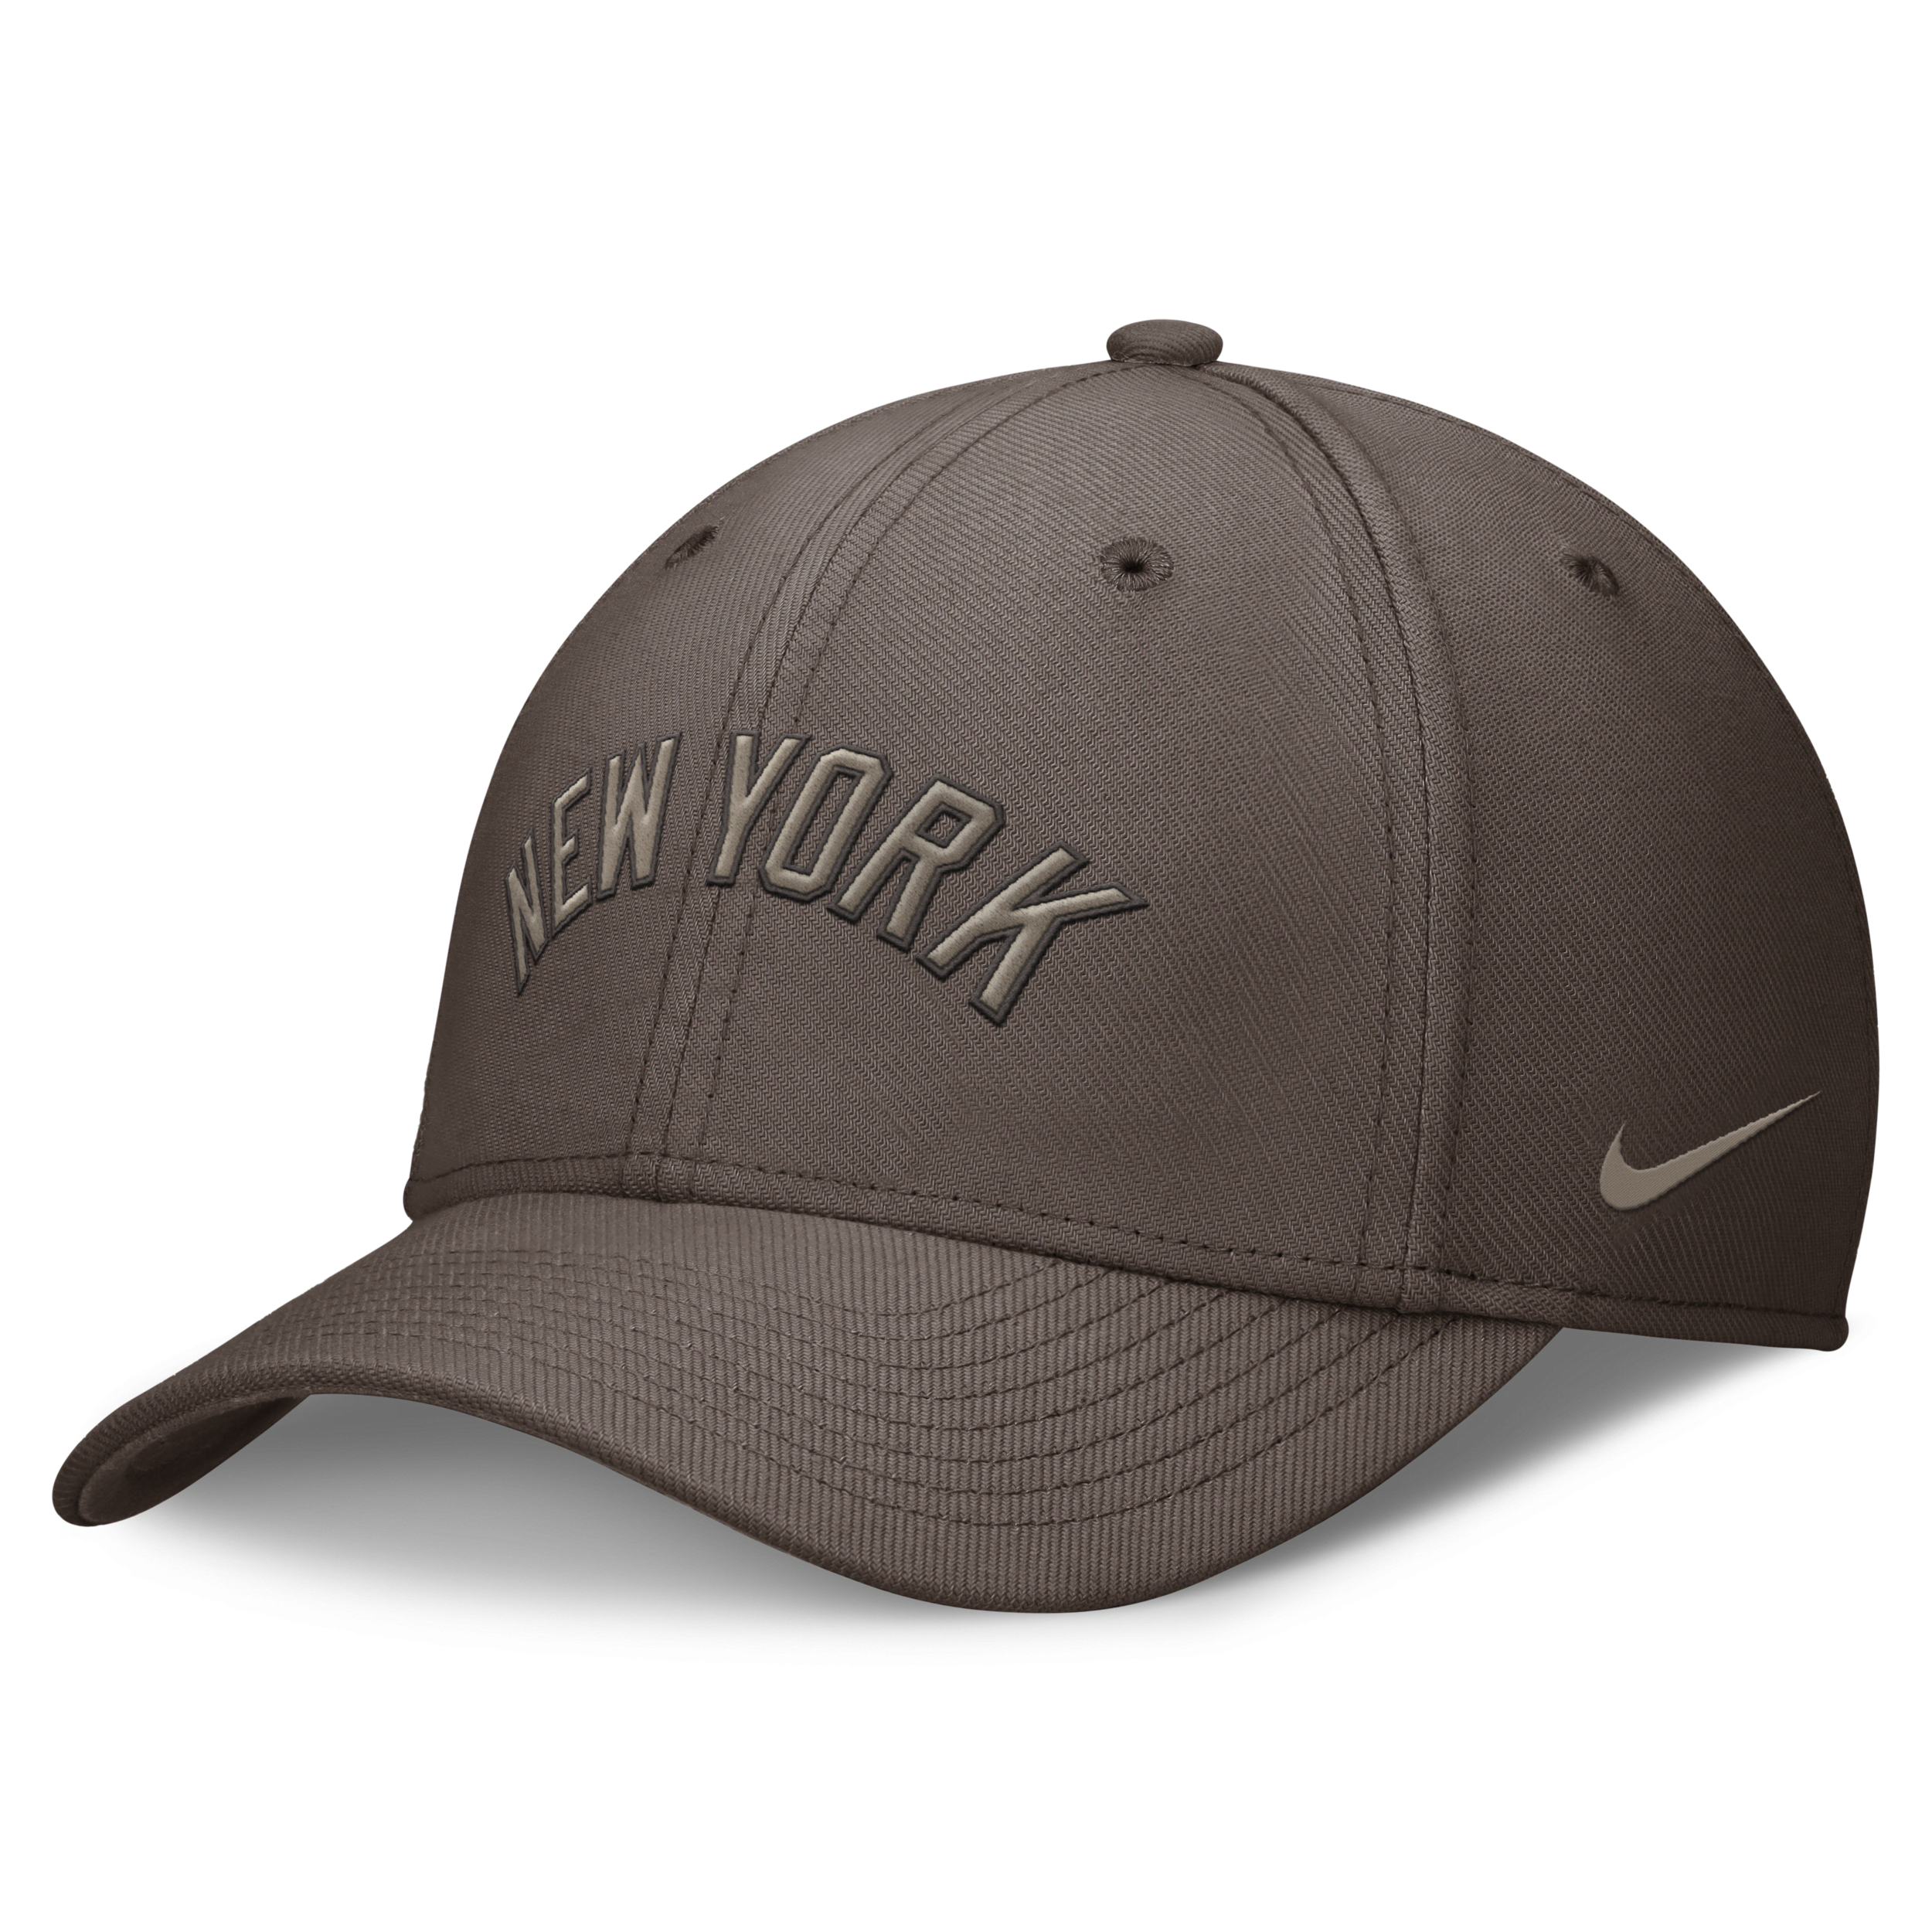 Nike New York Yankees Statement Swoosh  Men's Dri-fit Mlb Hat In Brown